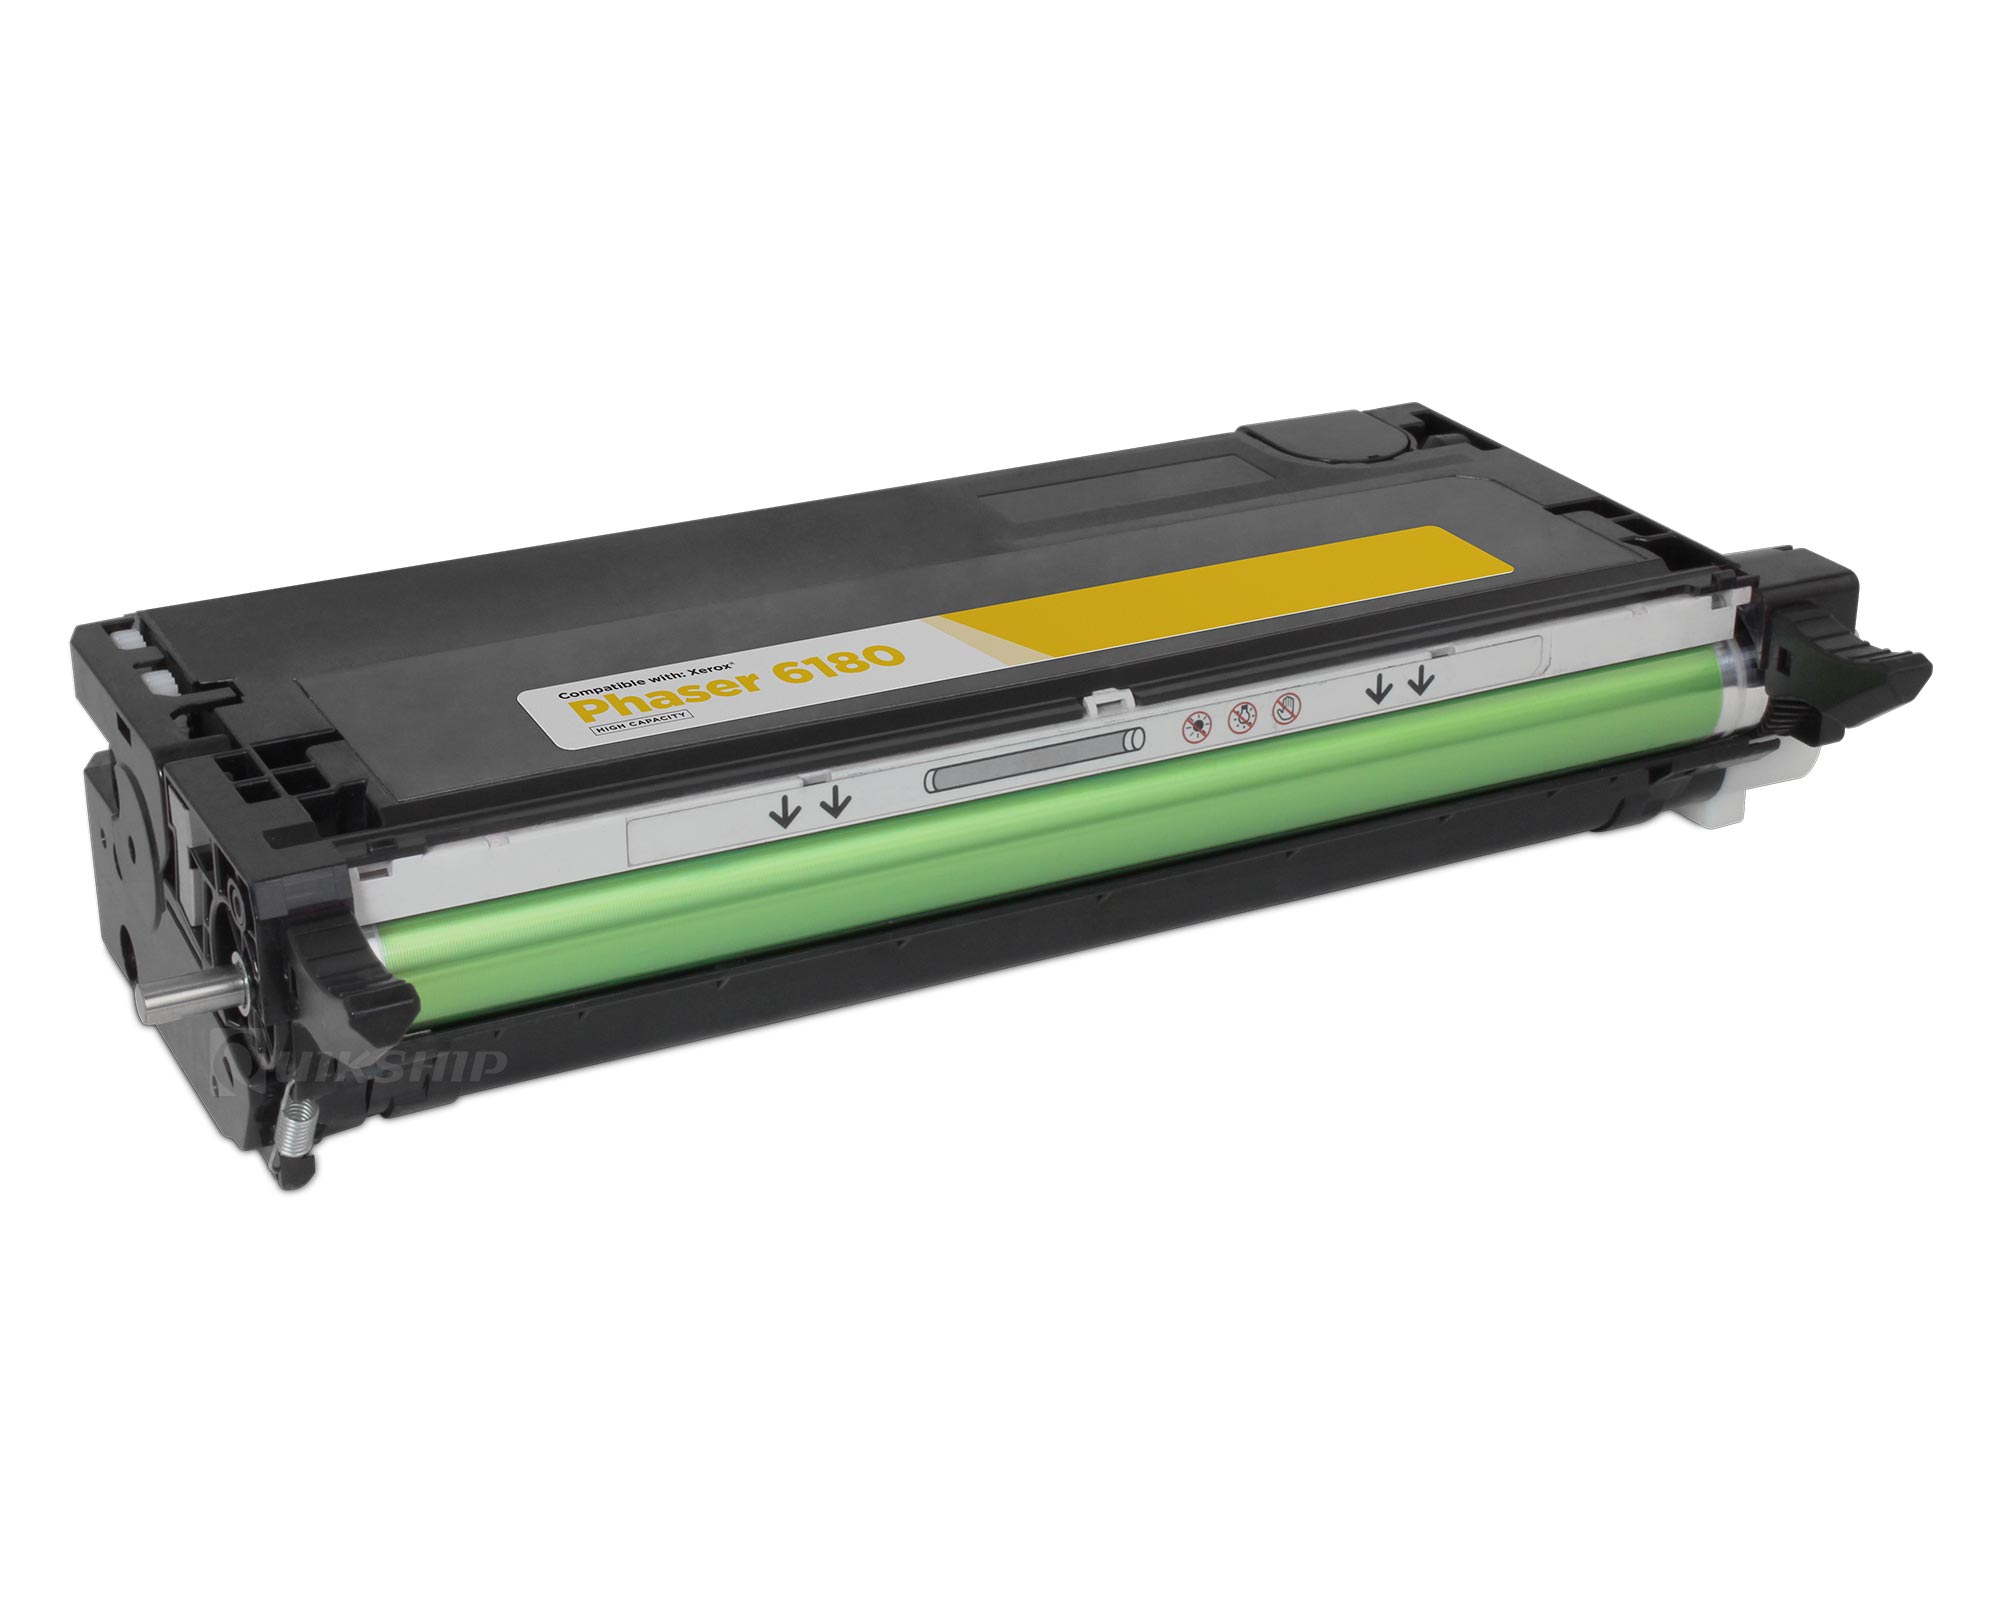 Toner Cartridge For Xerox Phaser 6180 Laser Printer Black Colour  6180dn 6180mfp 